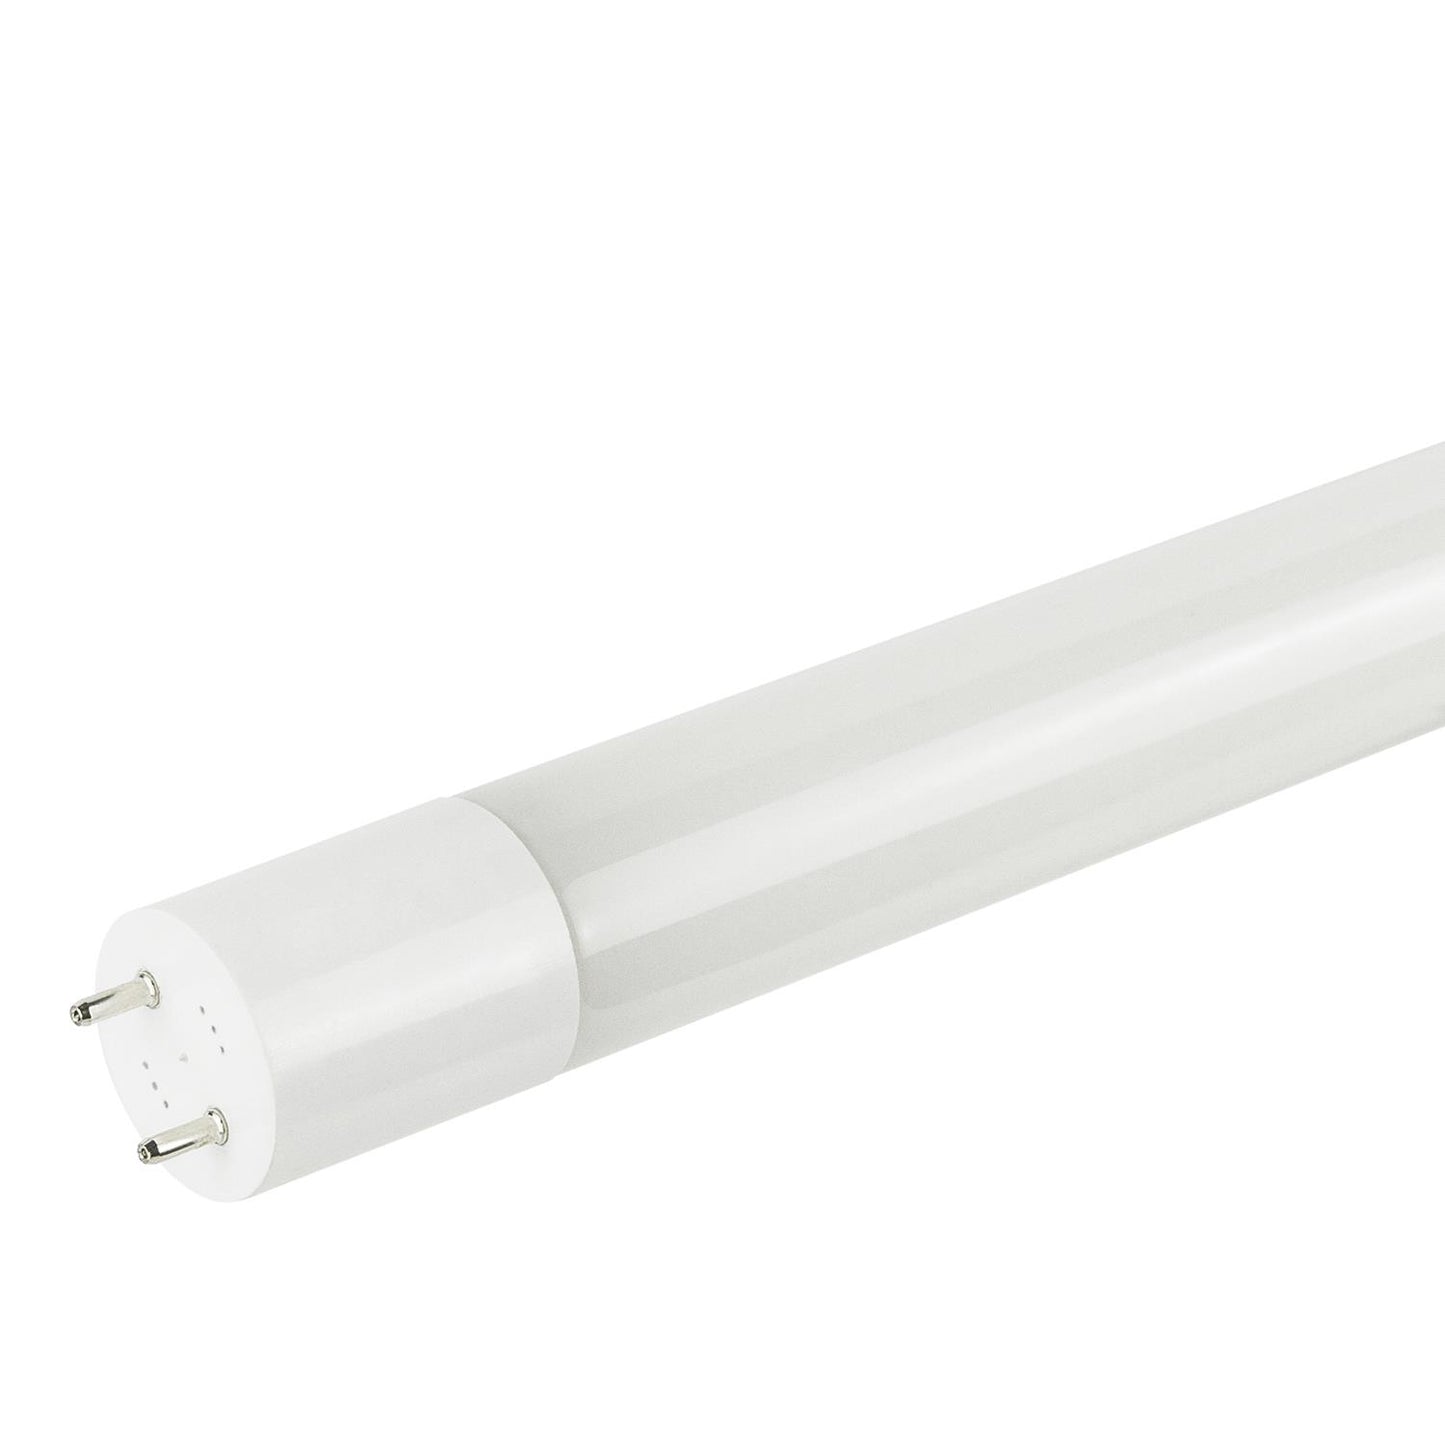 Sunlite T8/LED/2'/8W/IS/DLC/30K LED 8W 2 Foot Instant Start T8 Tube Light Fixtures, 3000K Warm White Light, G13 Base